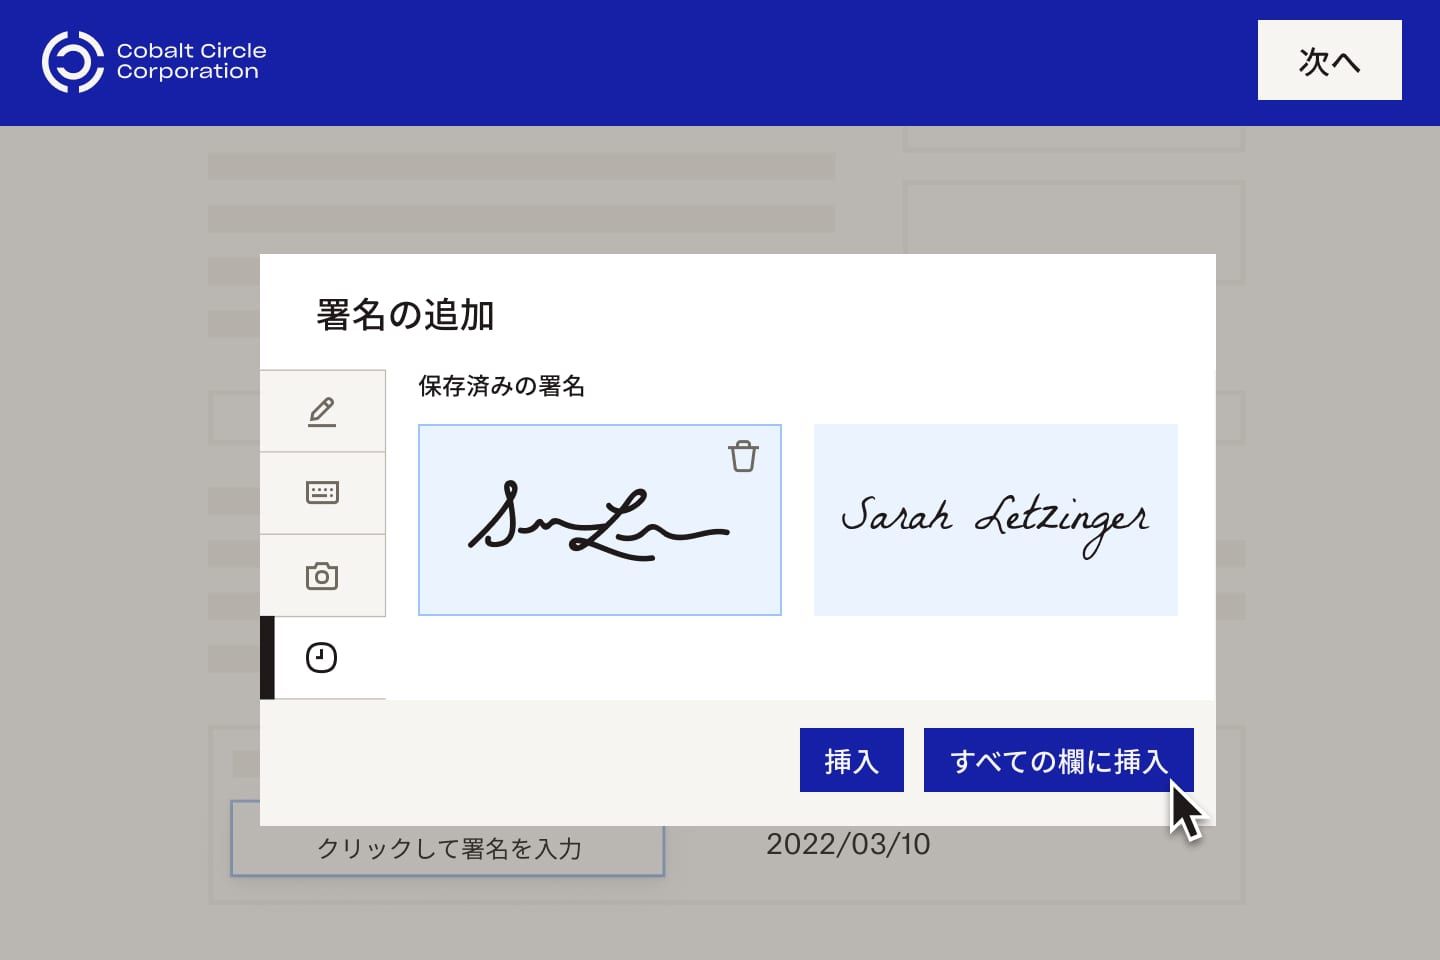 電子署名を 1 つまたは複数のフィールドに挿入する選択肢を与えられたユーザー